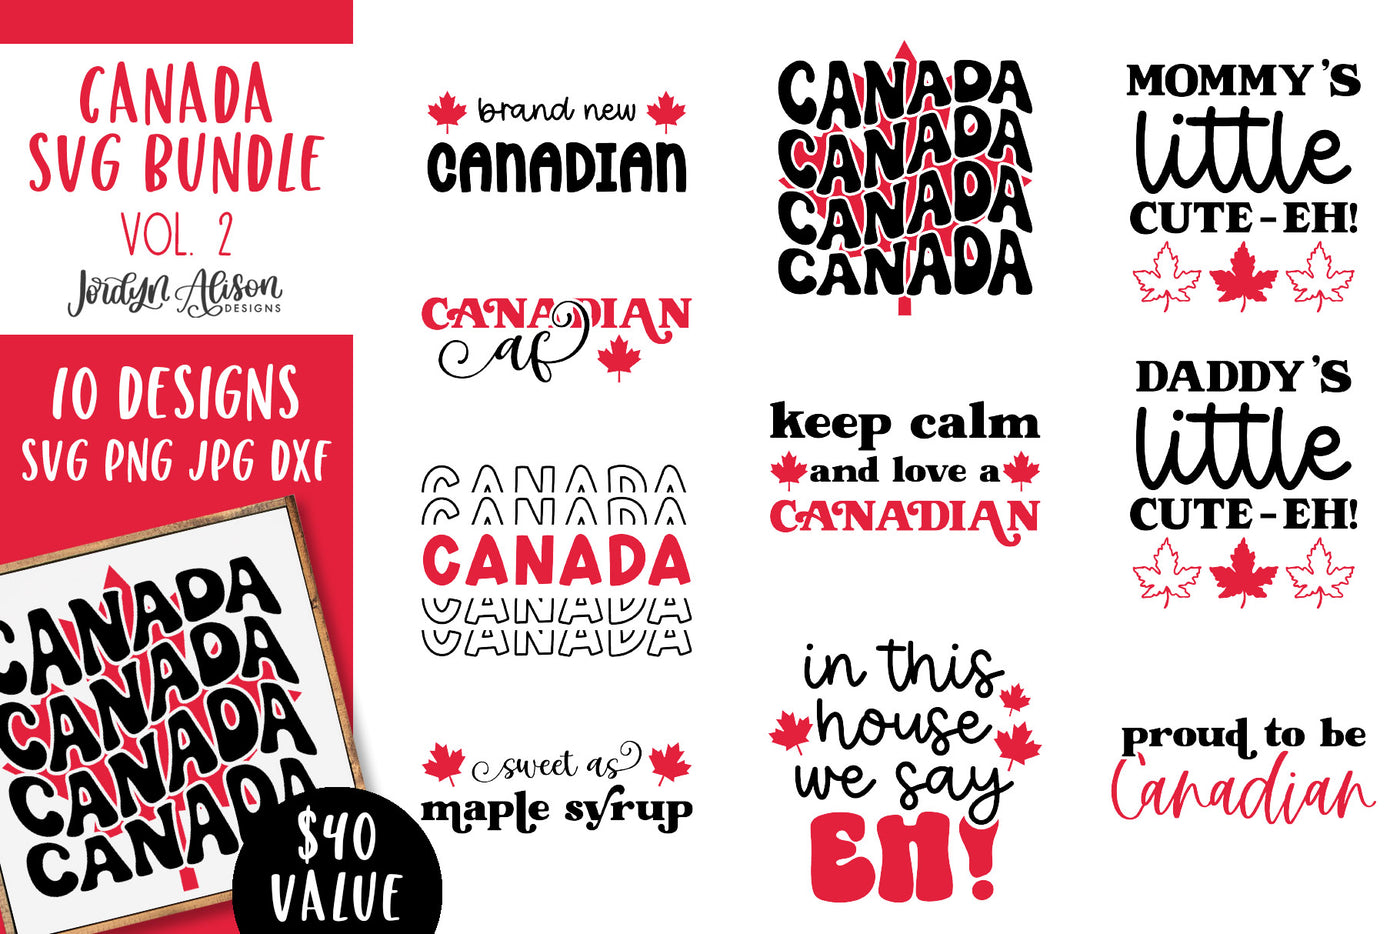 Canada SVG Bundle Vol 2